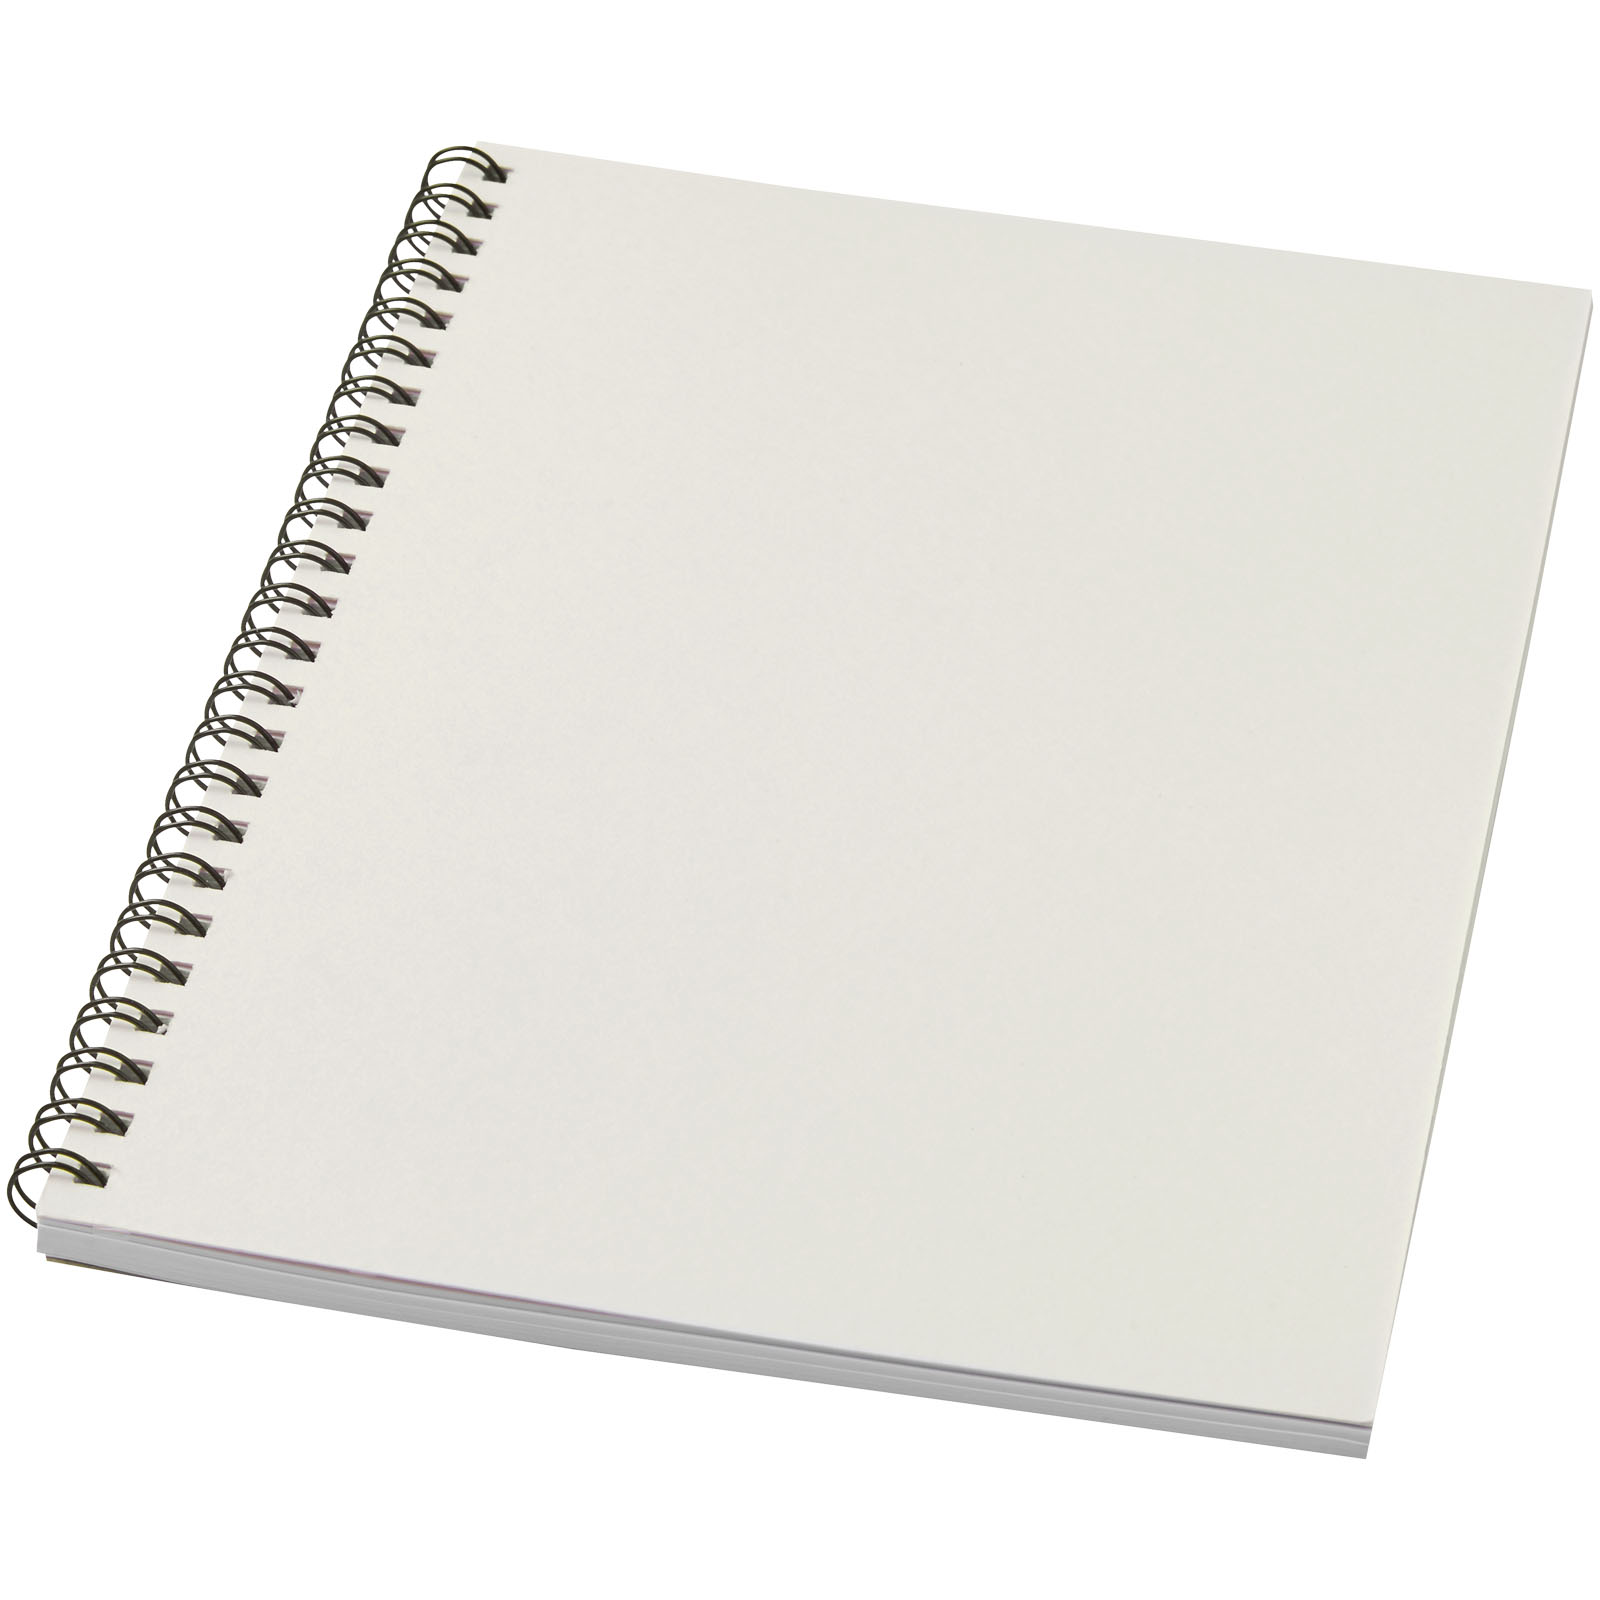 Blocs-notes et essentiels pour le bureau - Carnet de notes spirales Desk-Mate® A5 coloré